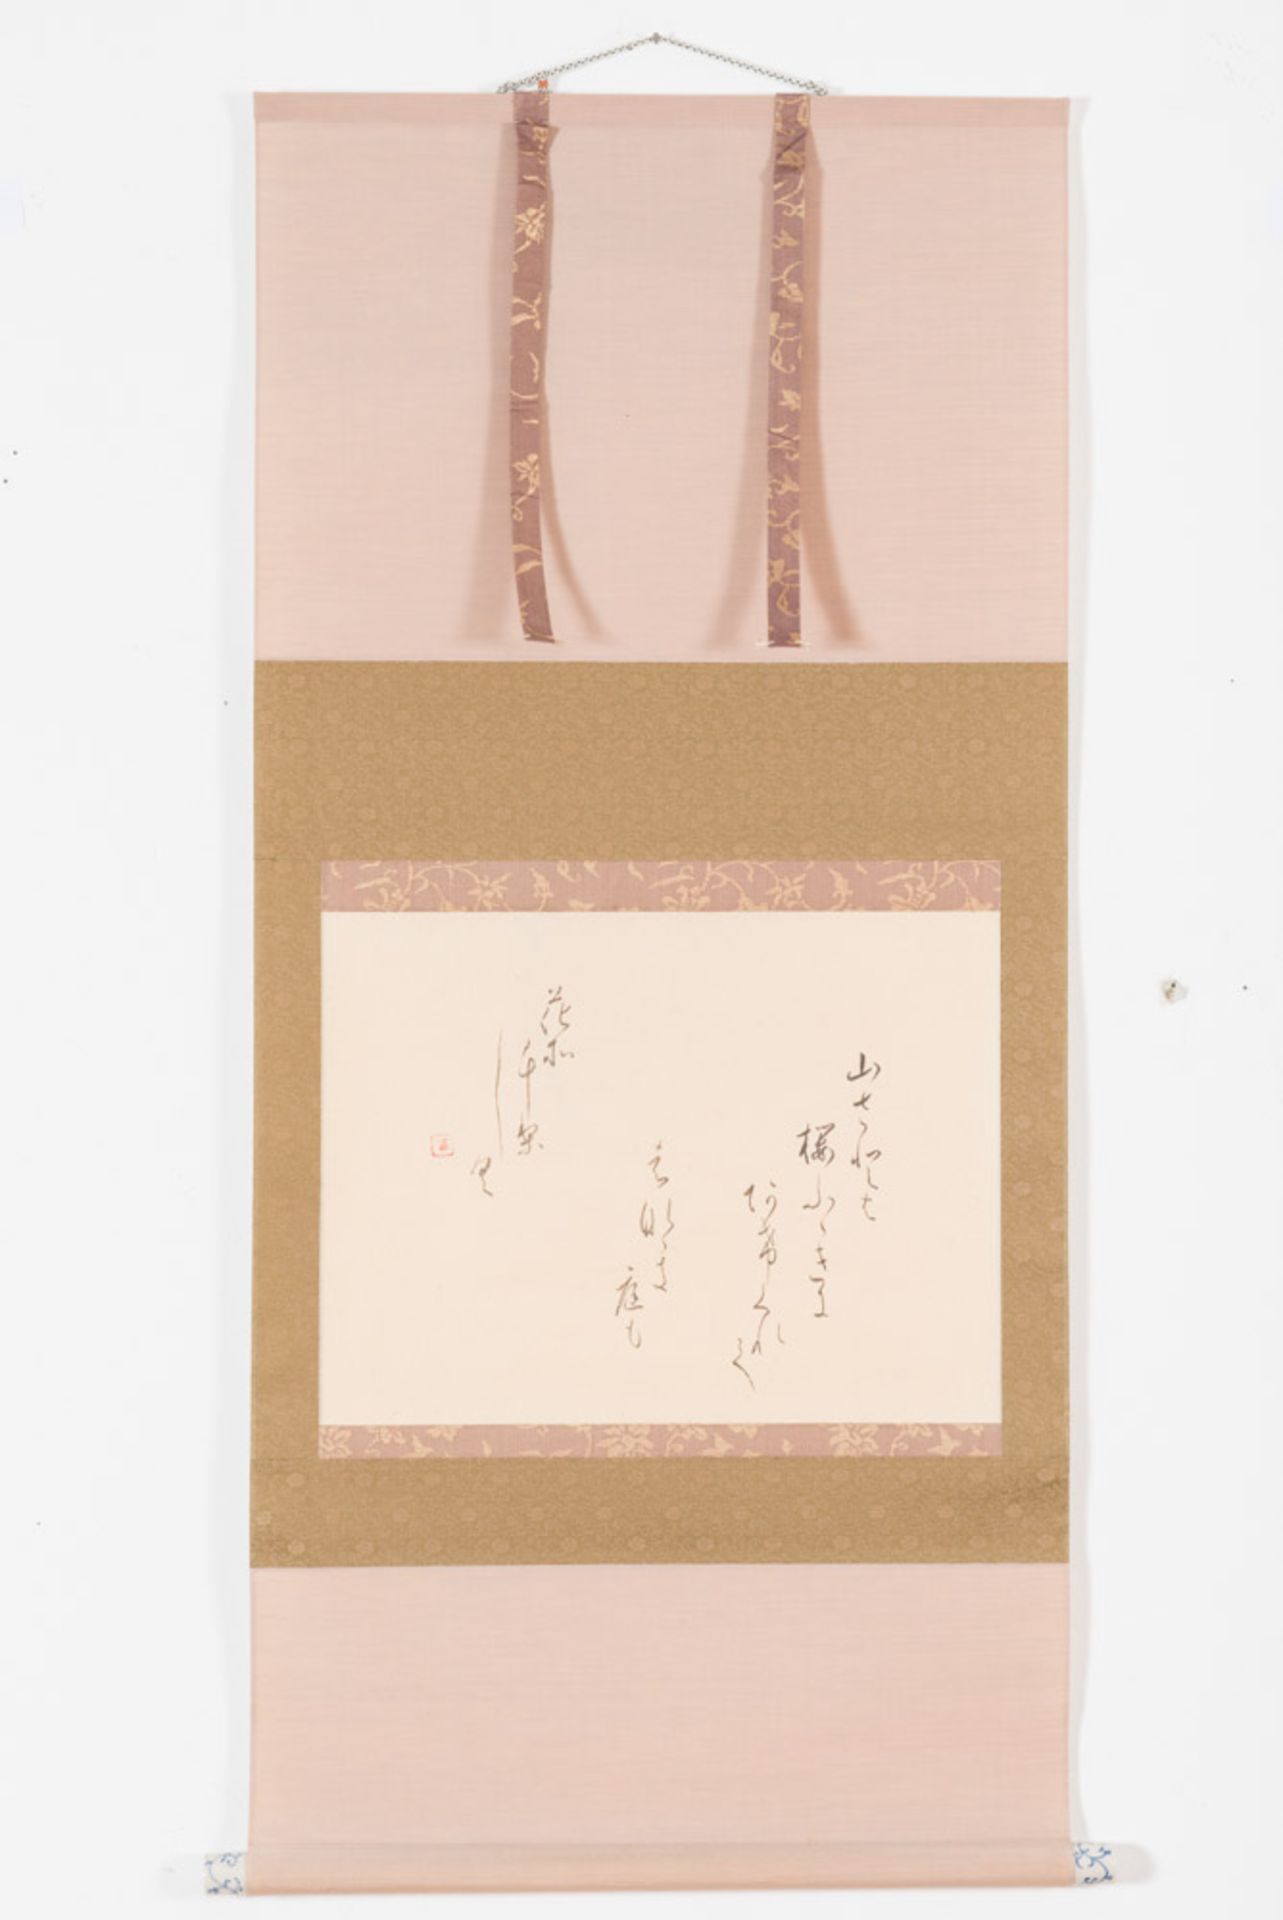 KALLIGRAFISCHES BI
Tusche auf Papier. Japan, 19. Jh.Die reine Bildfläche ist ein Querformat, in - Bild 2 aus 2